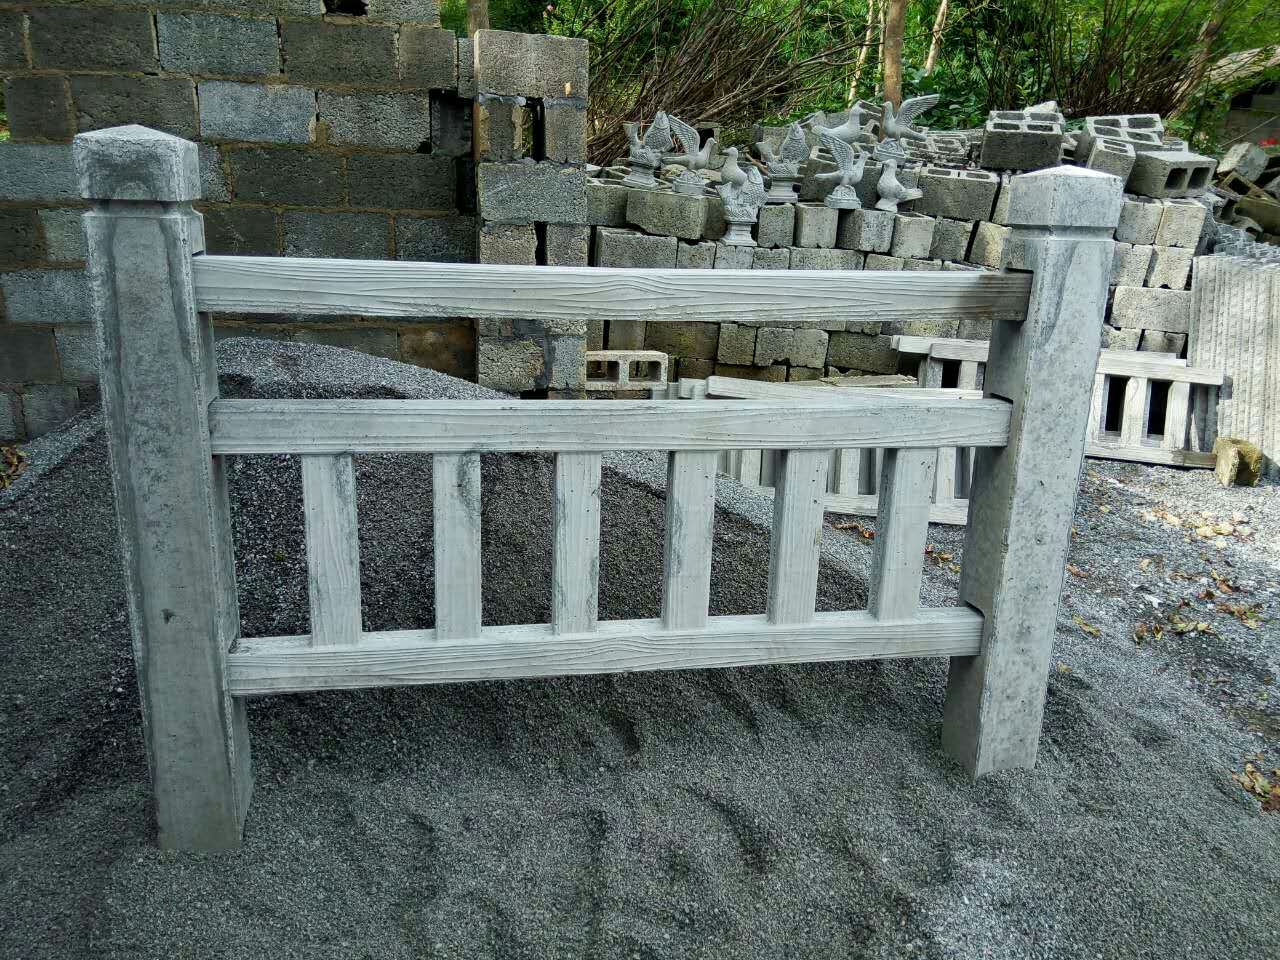 水泥围栏厂家的栏杆规范可防堕楼住宅存安全隐患